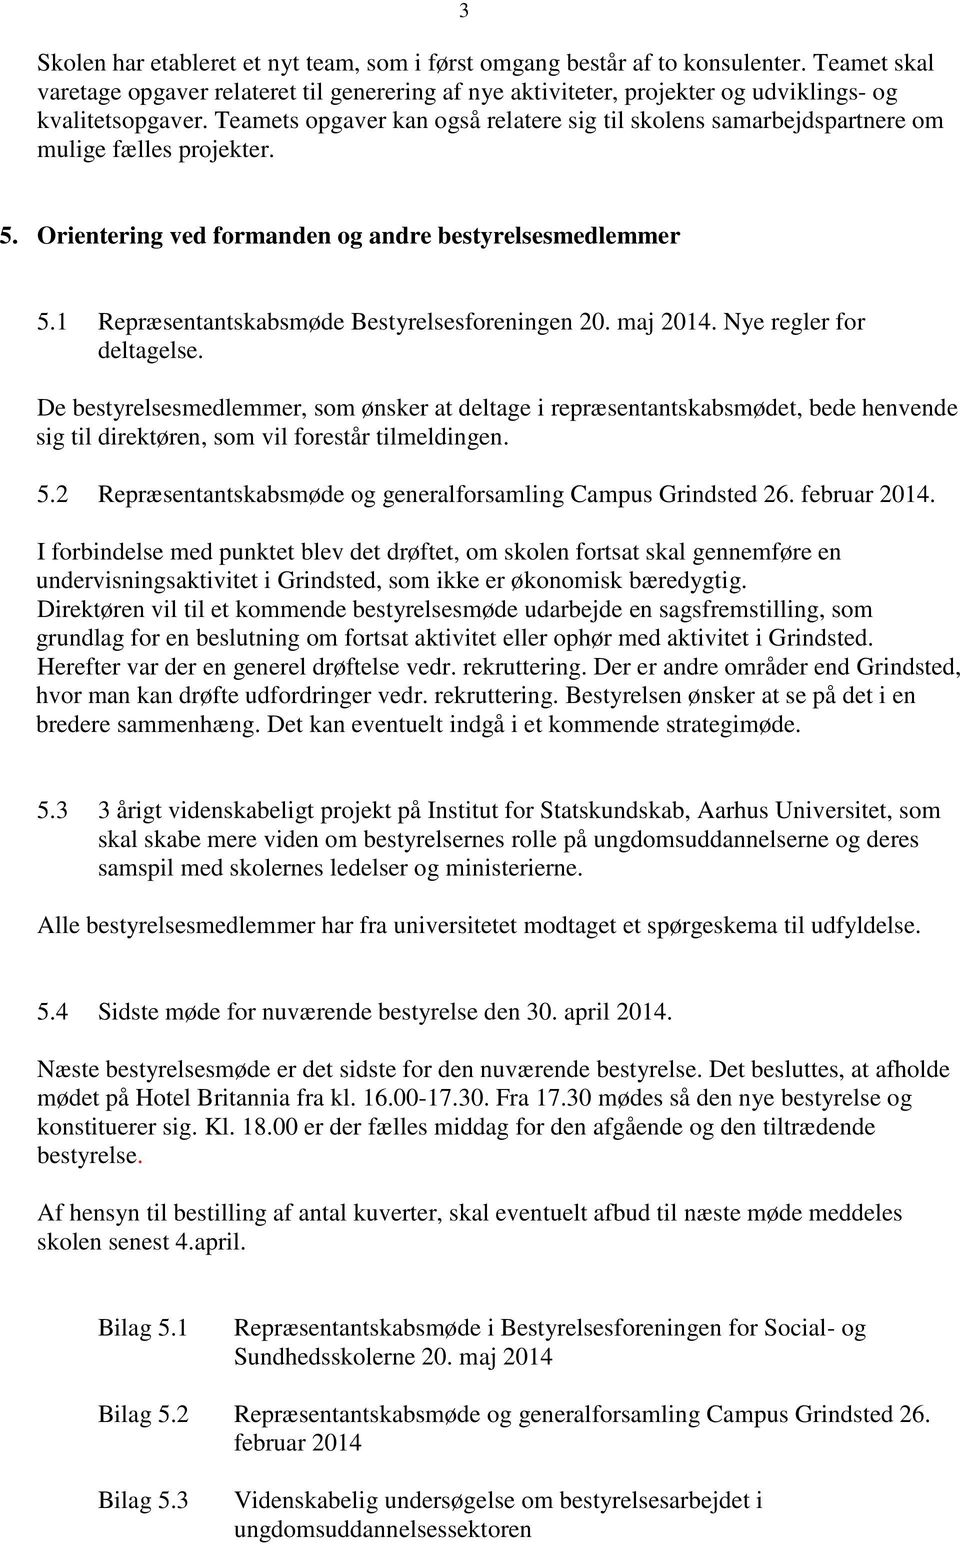 1 Repræsentantskabsmøde Bestyrelsesforeningen 20. maj 2014. Nye regler for deltagelse.